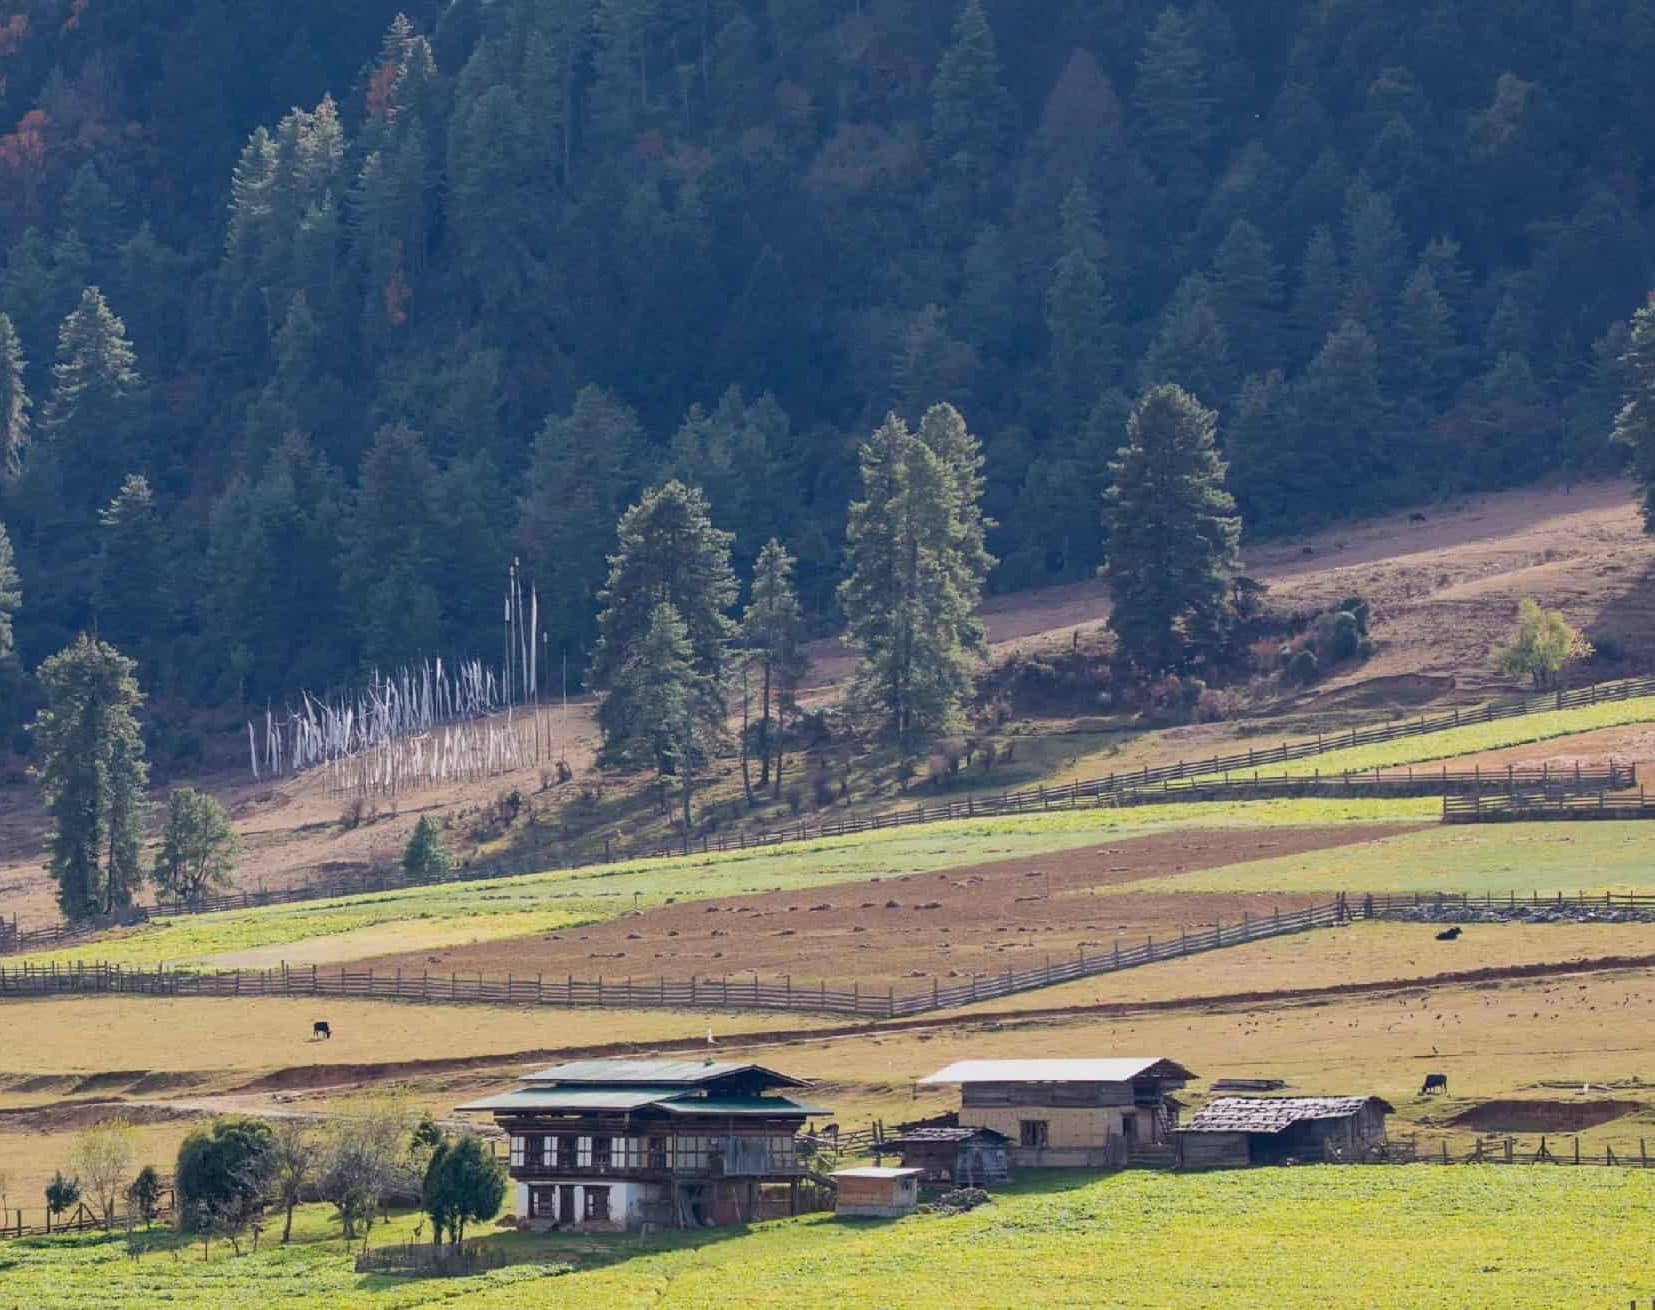 Activité ferme Gangtey Lodge Bhoutan